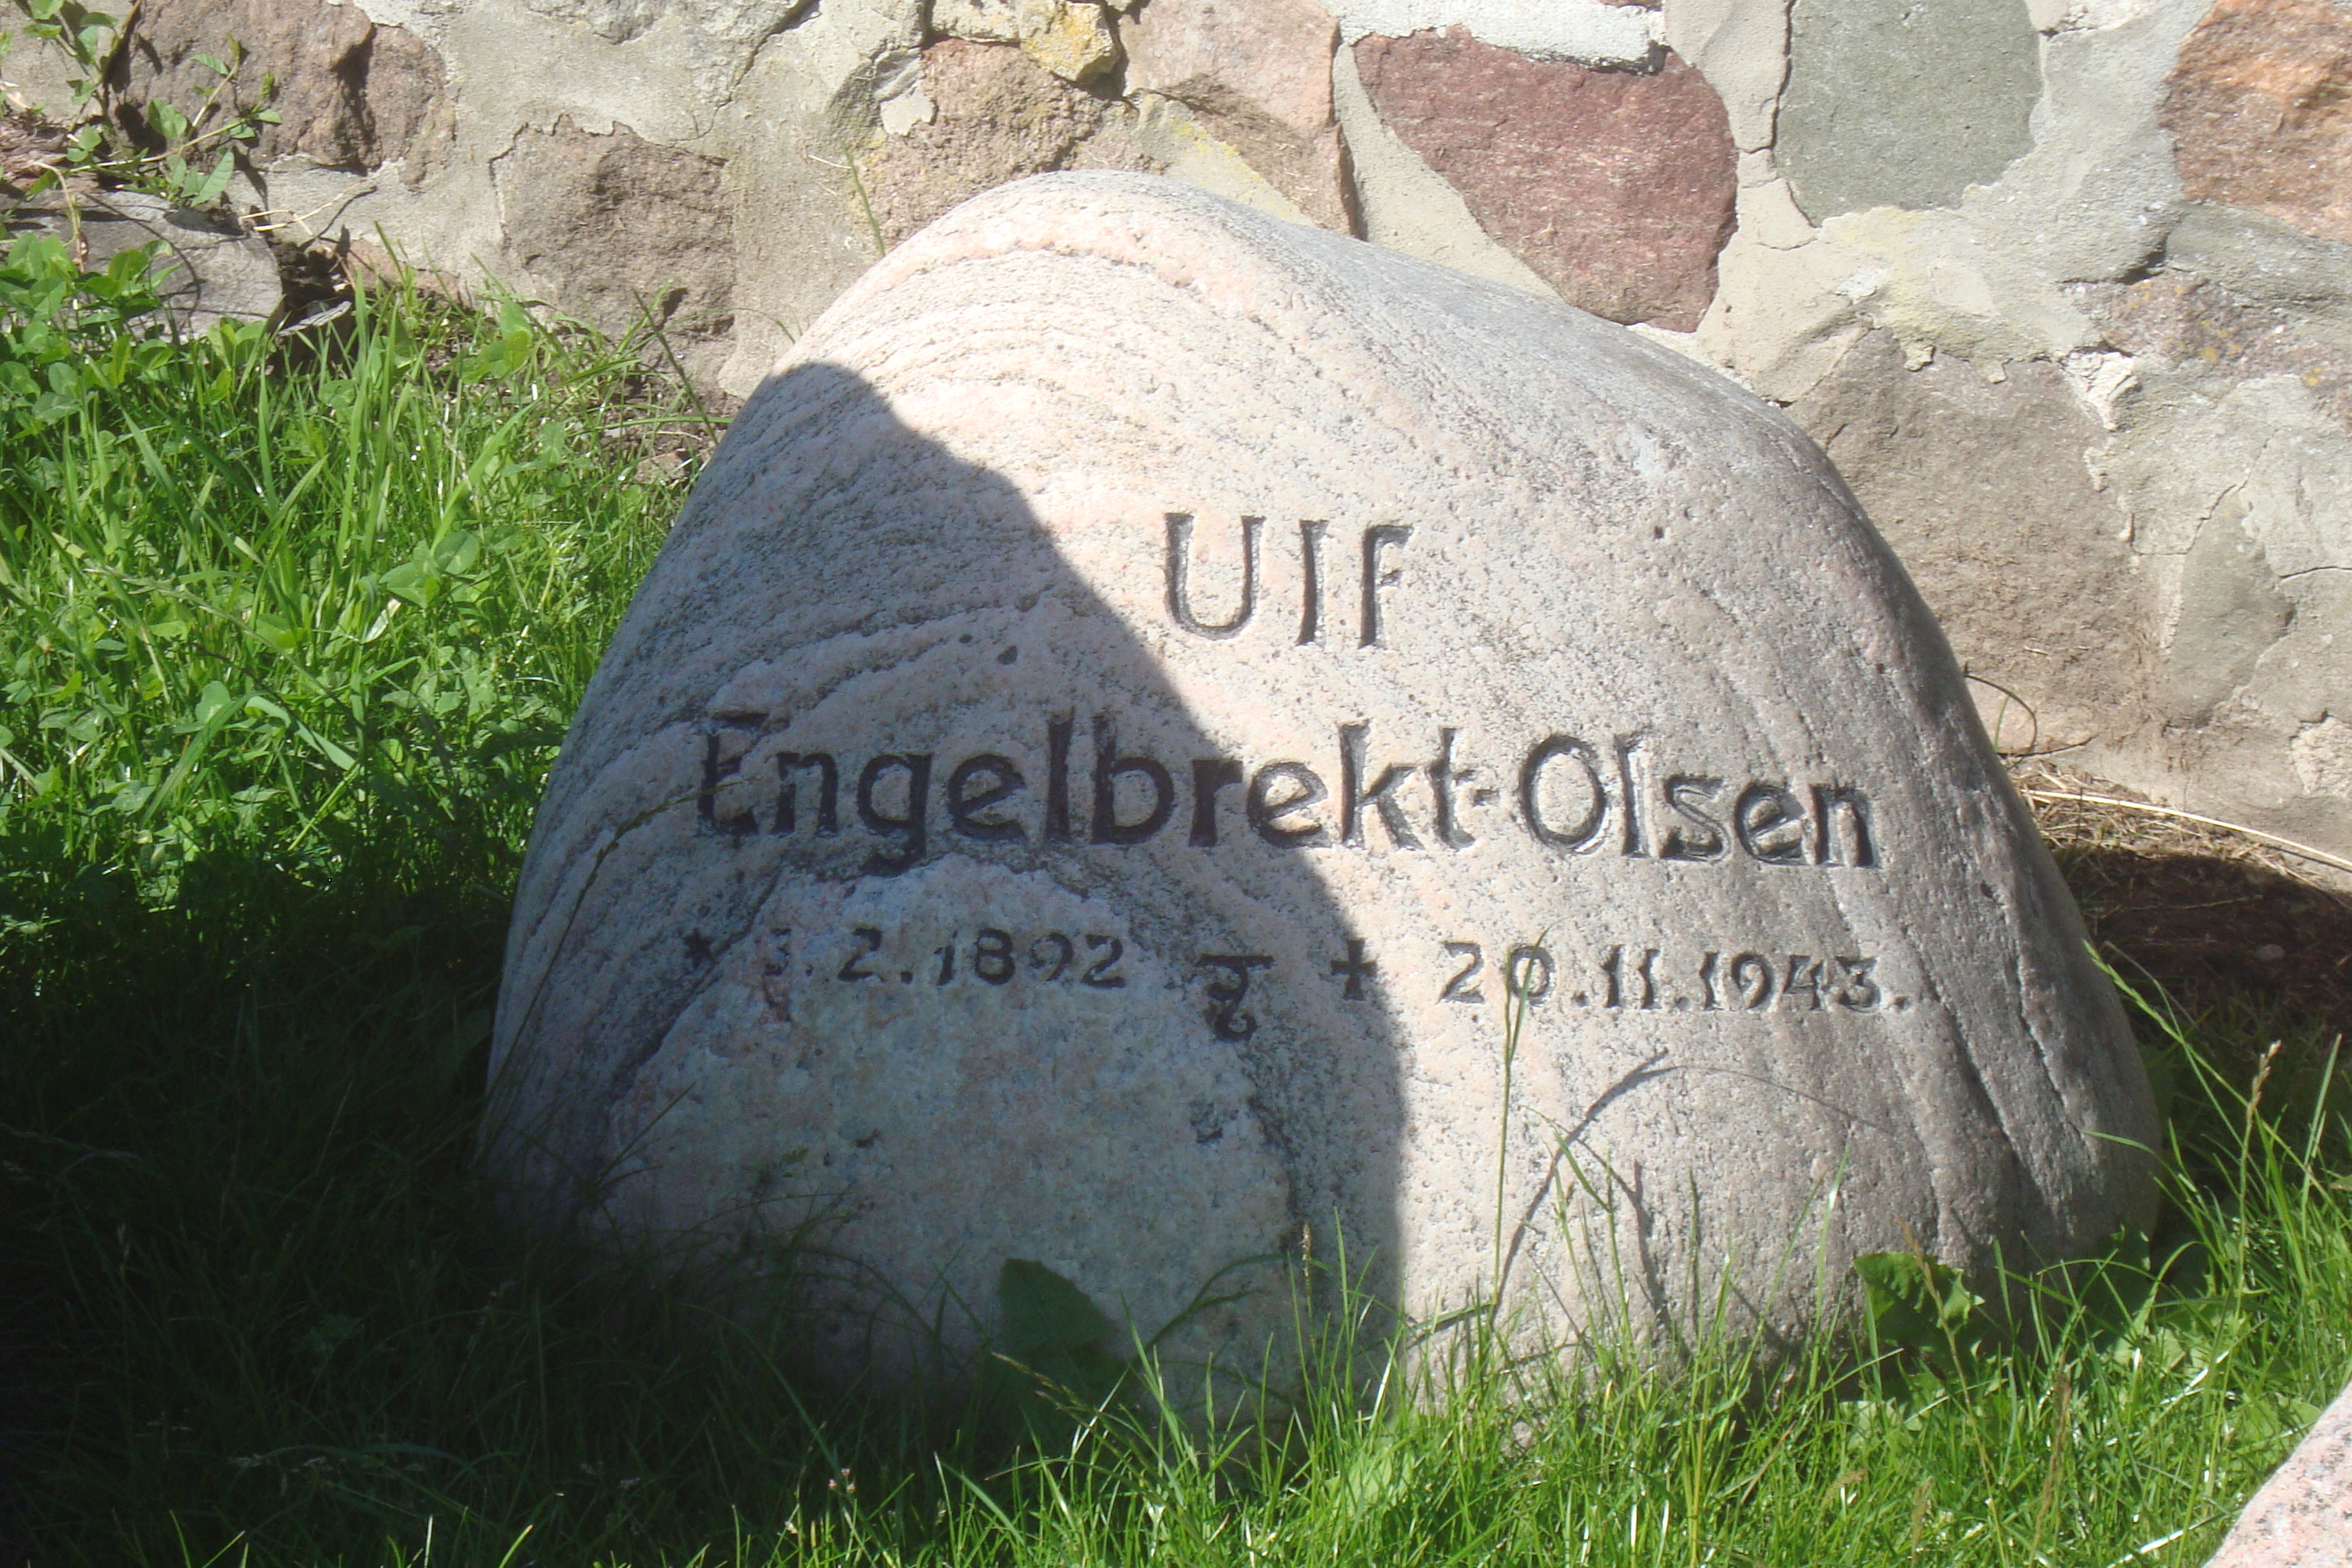 Ulf Engelbrekt - Olsen.JPG